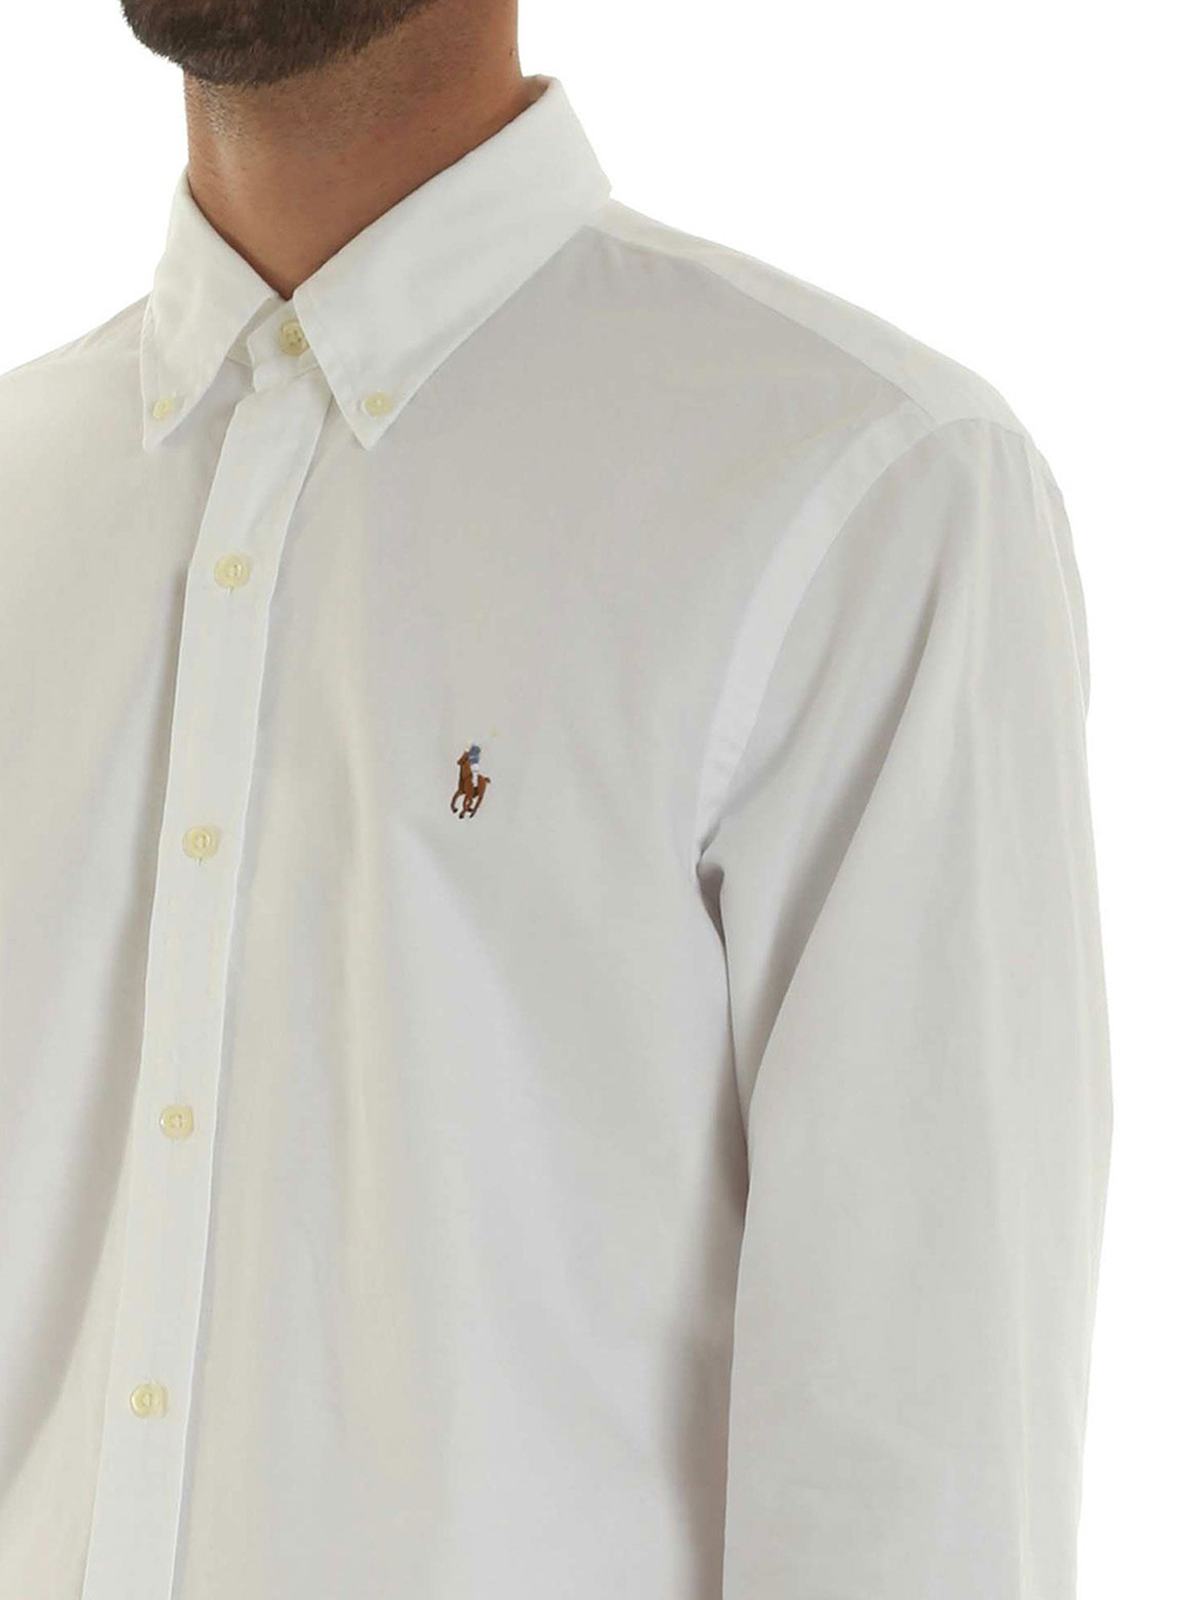 ralph lauren button down collar shirts